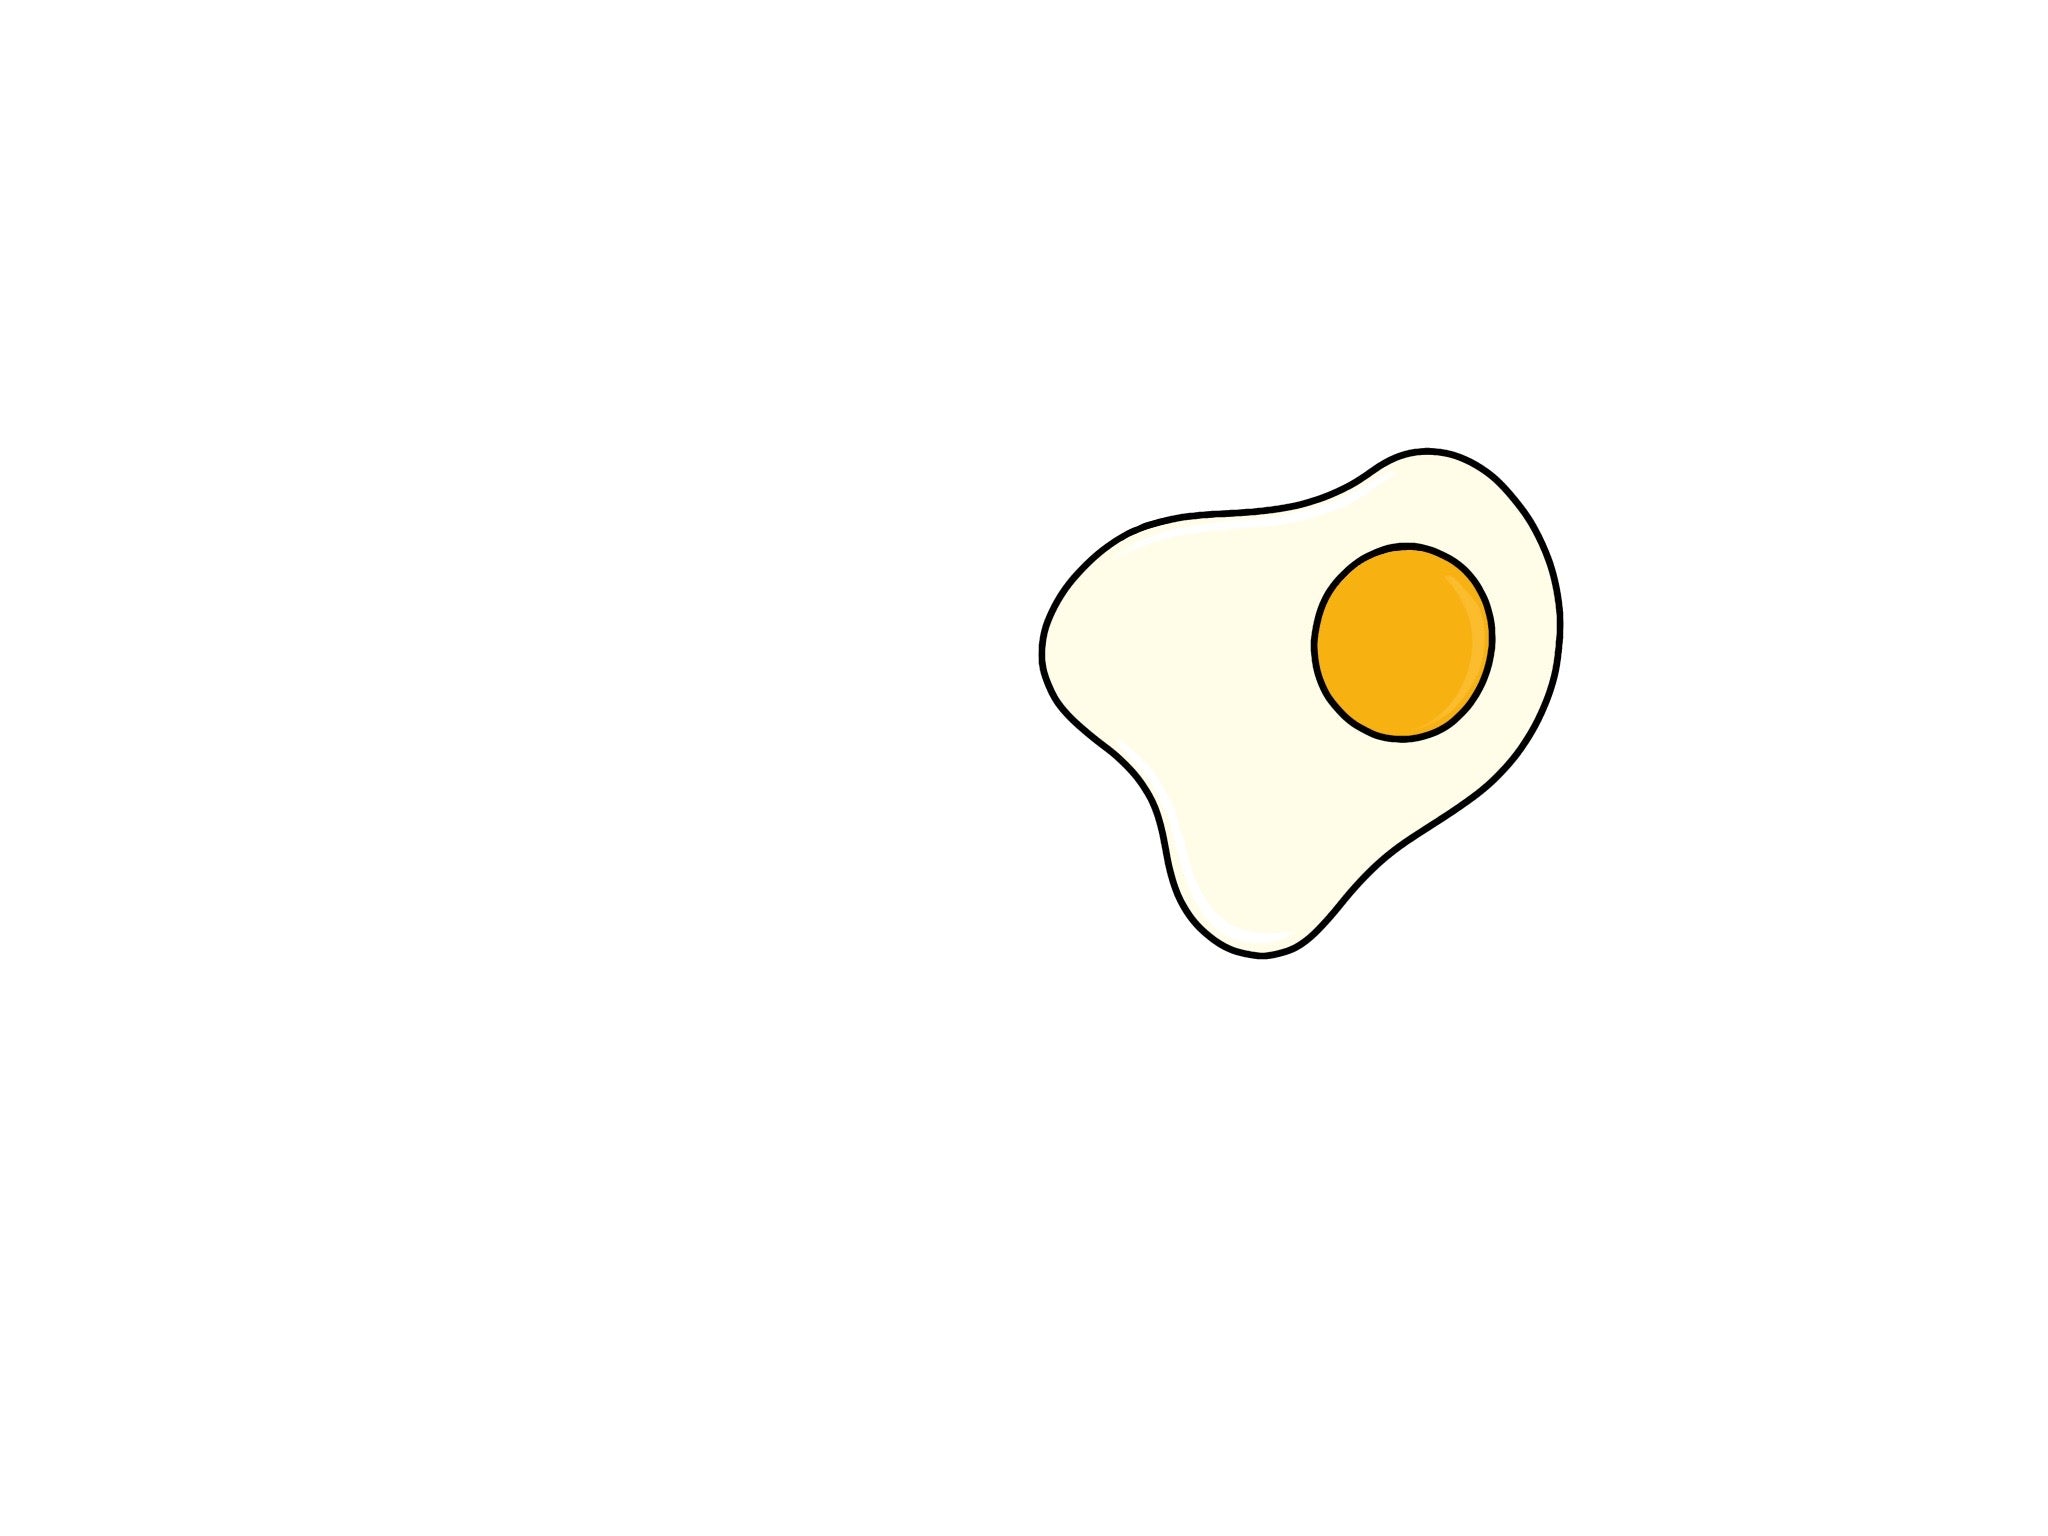 Breakfast Egg